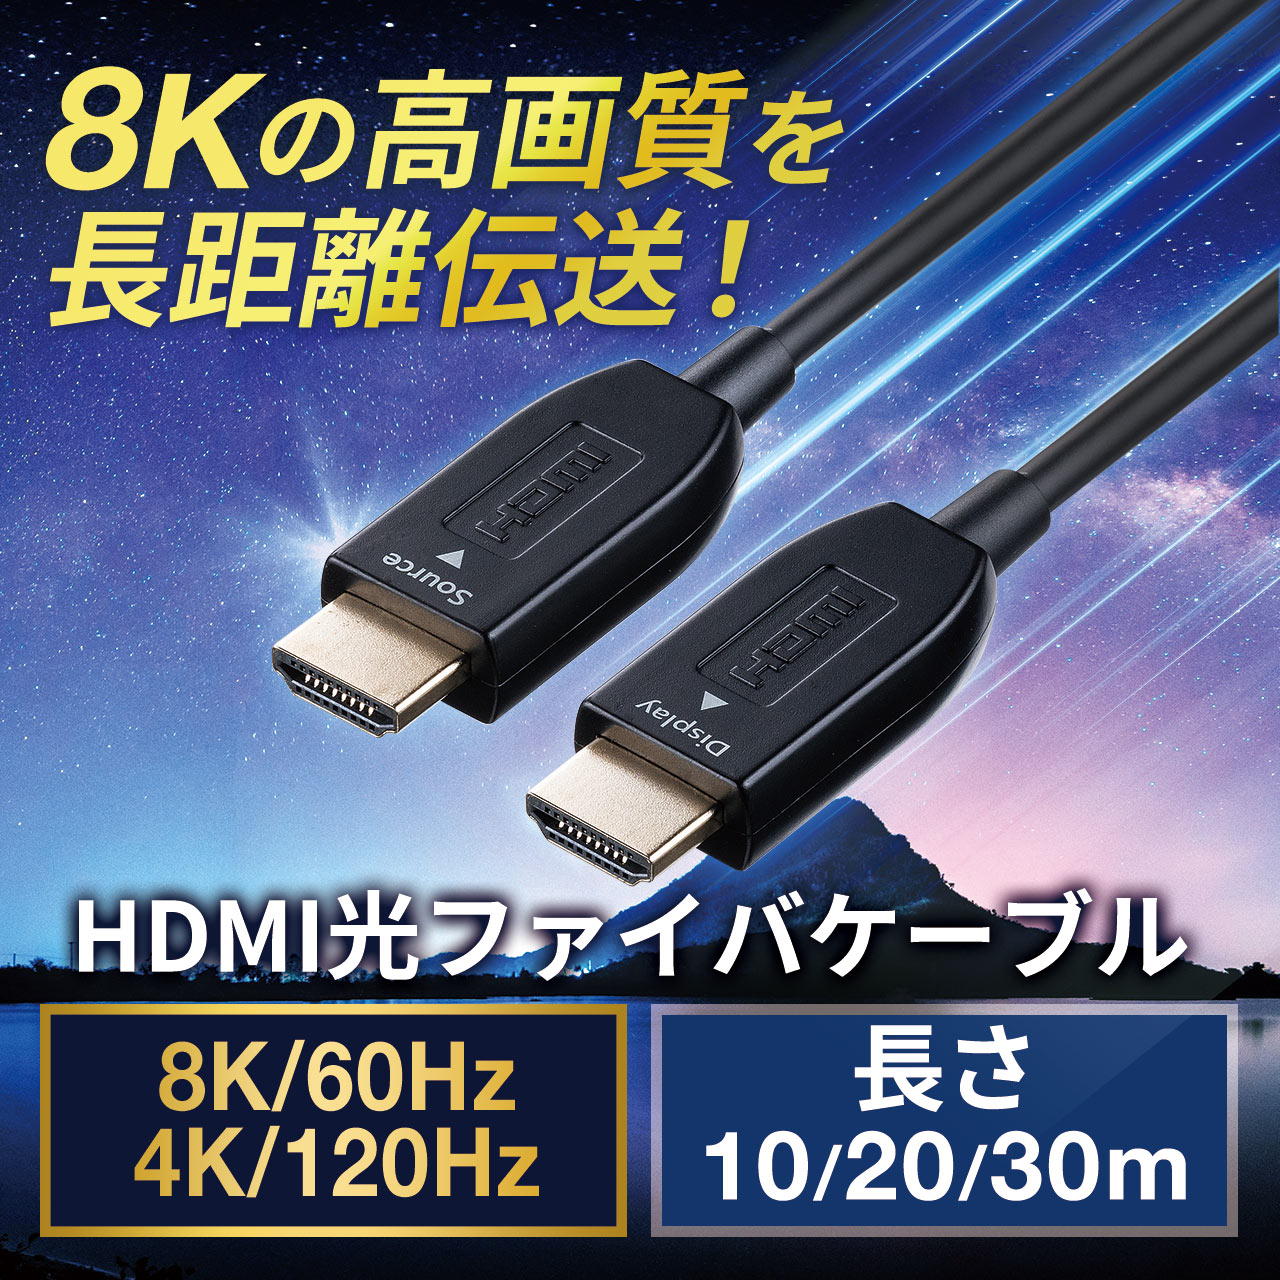 Twozoh HDMI光ファイバーケーブル 75M 4KファイバーHDMIコード 4K@60Hz/18Gbps対応 